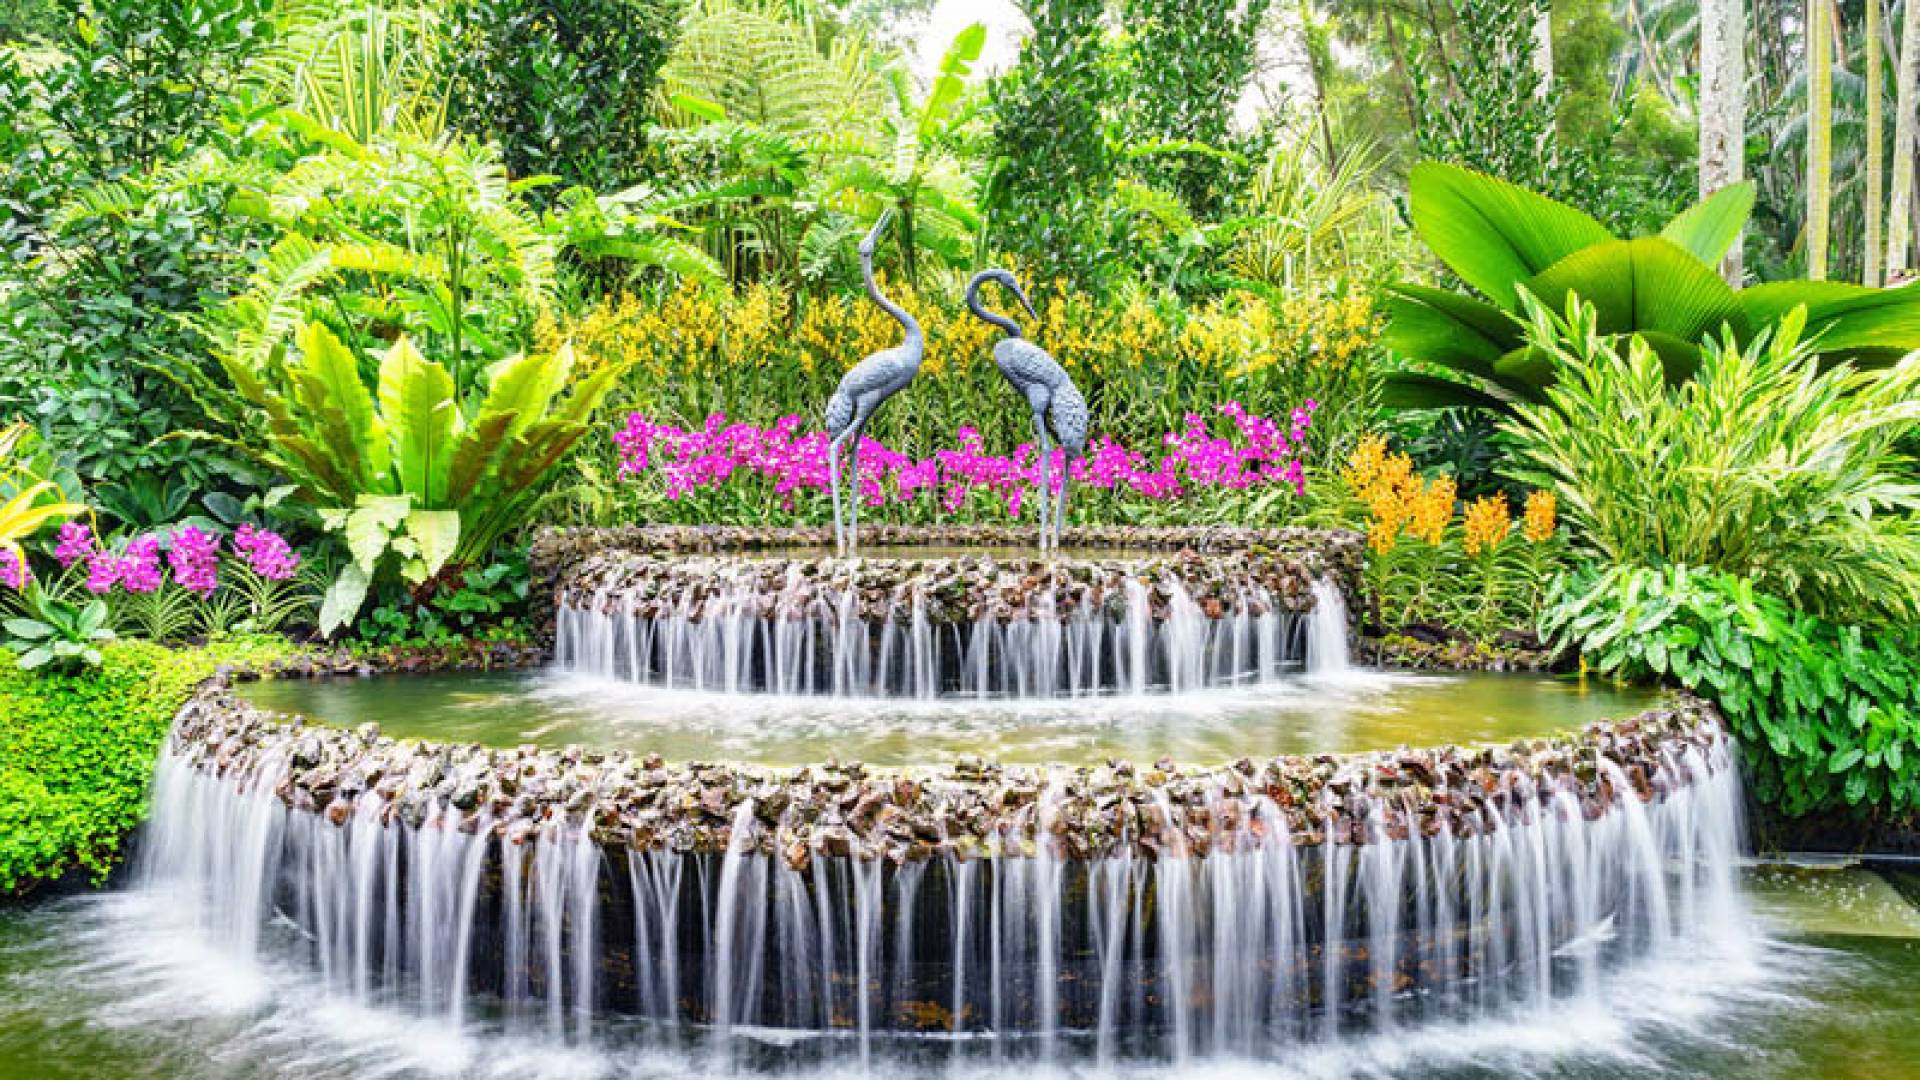 SINGAPORE BOTANIC GARDENS, Singapore Botanic Gardens